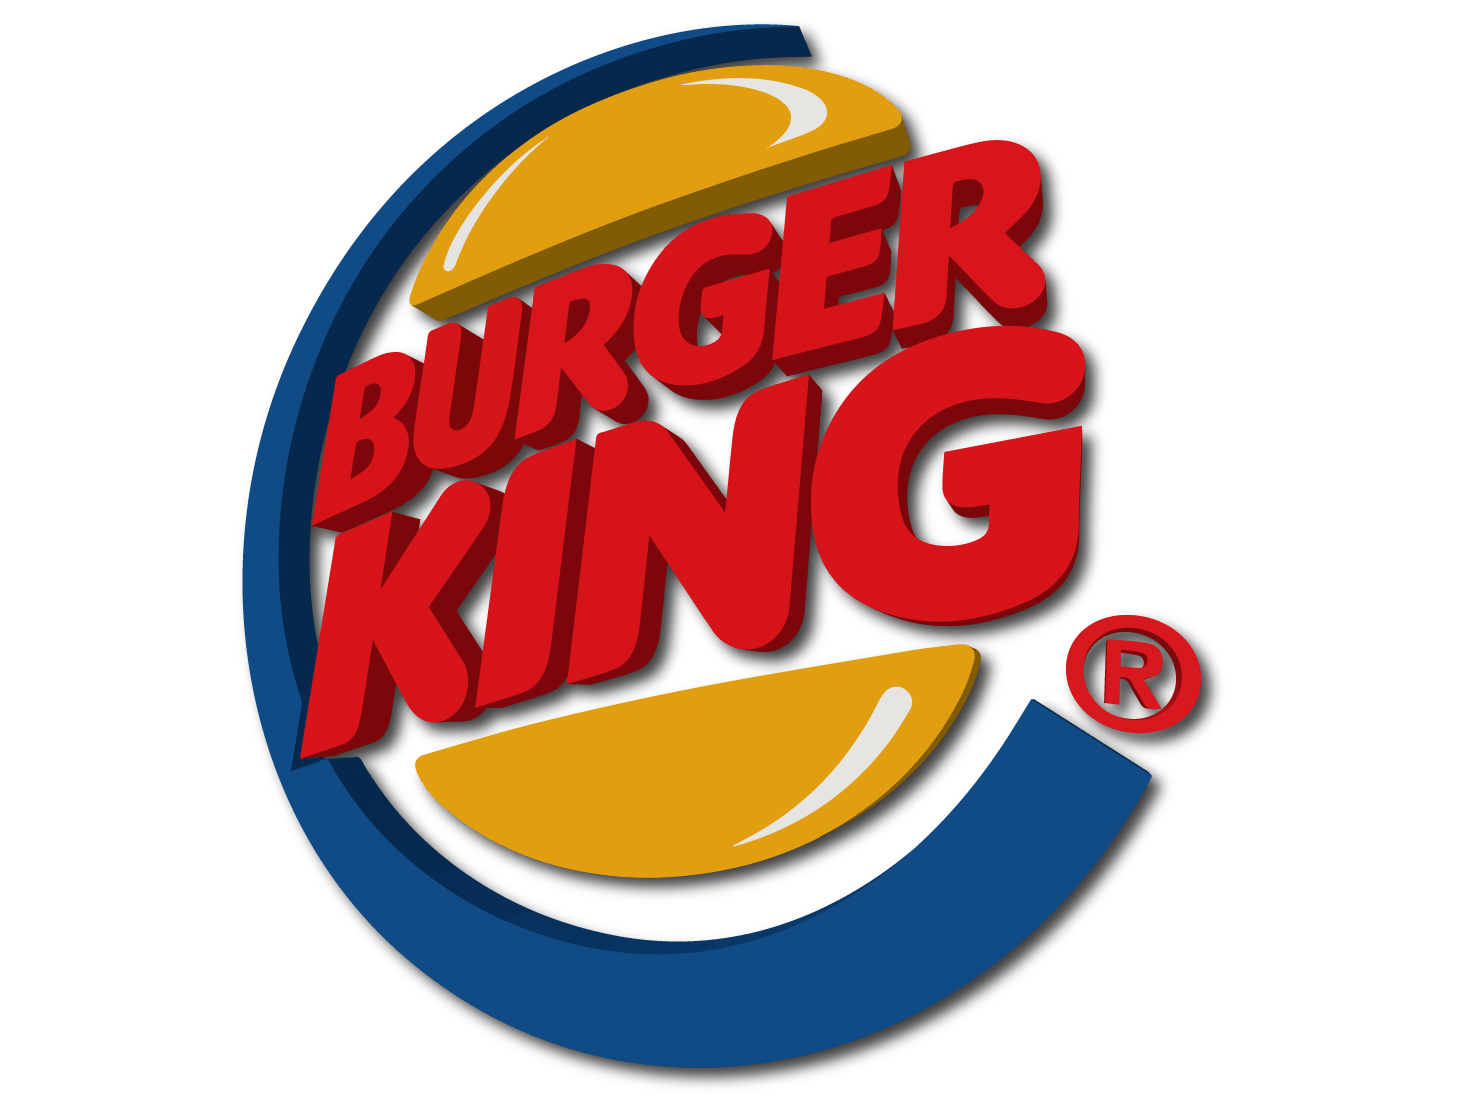 Burger King Logo Png Image Purepng Free Transparent Cc0 Png Image ...